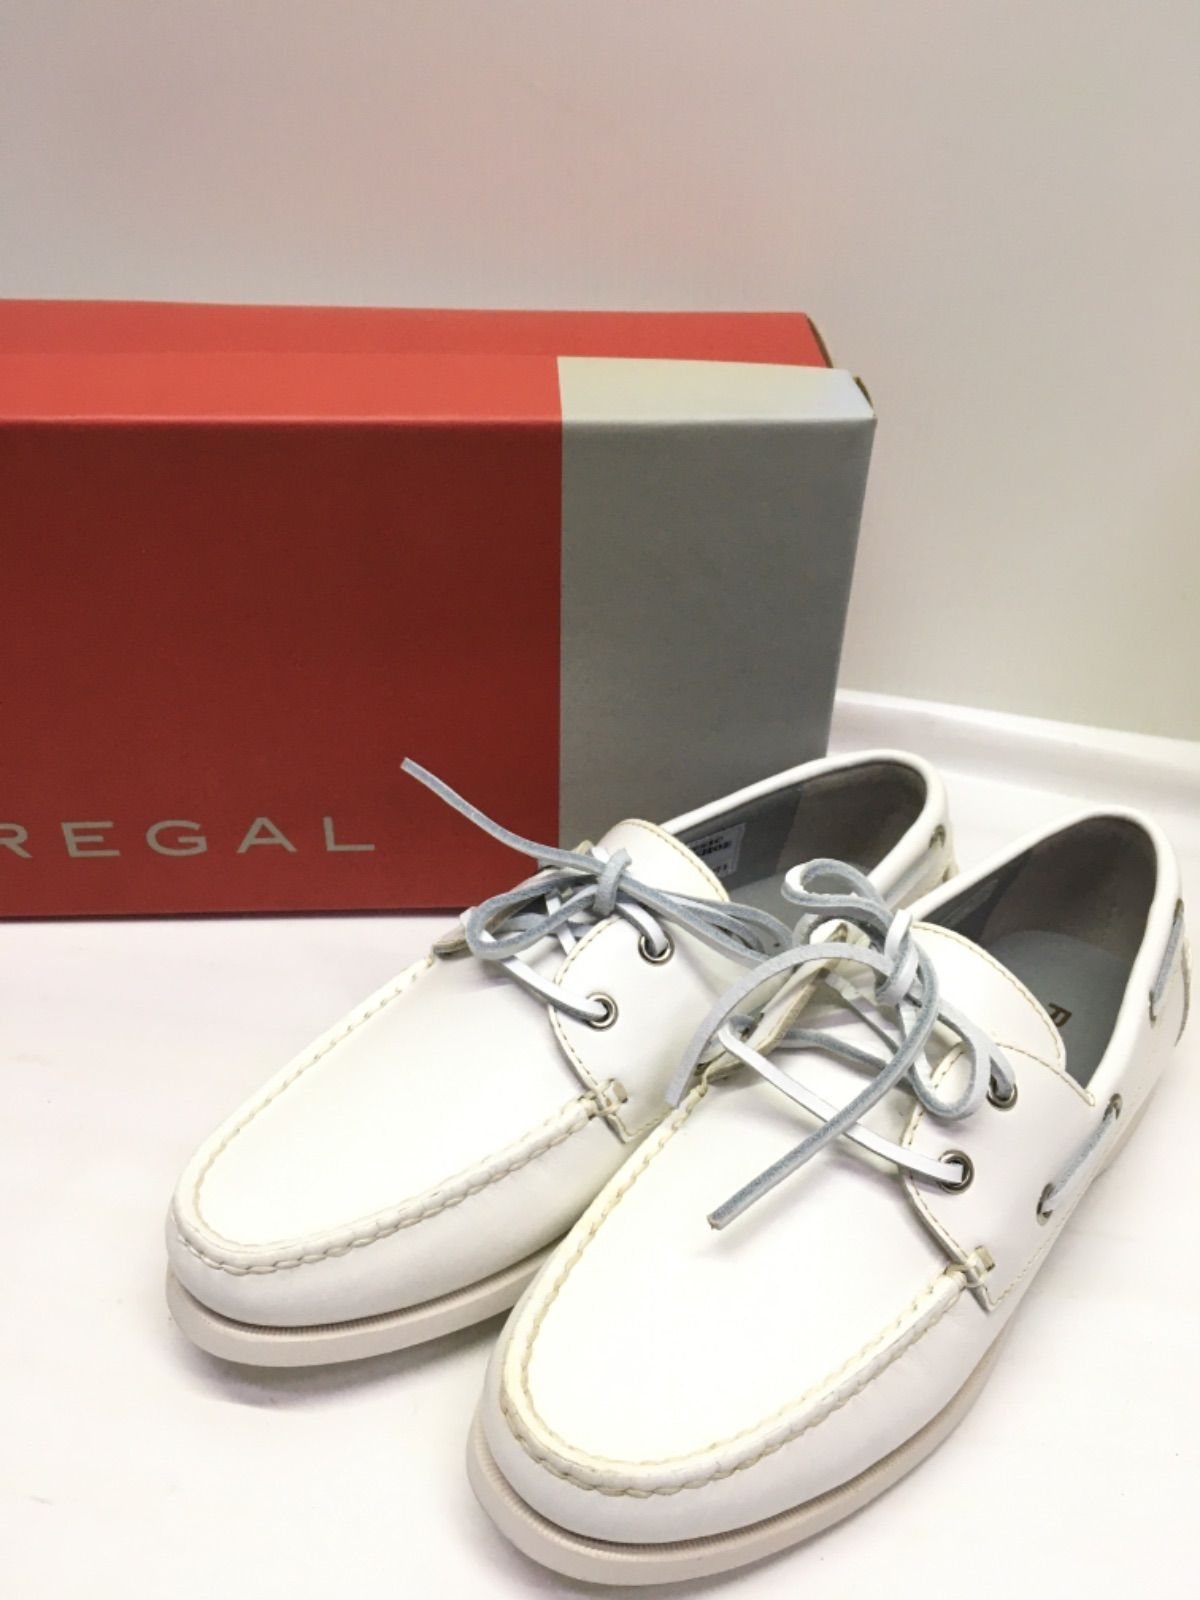 未使用品 REGAL メンズ デッキシューズ 554R /24cm 7790円 靴 www ...